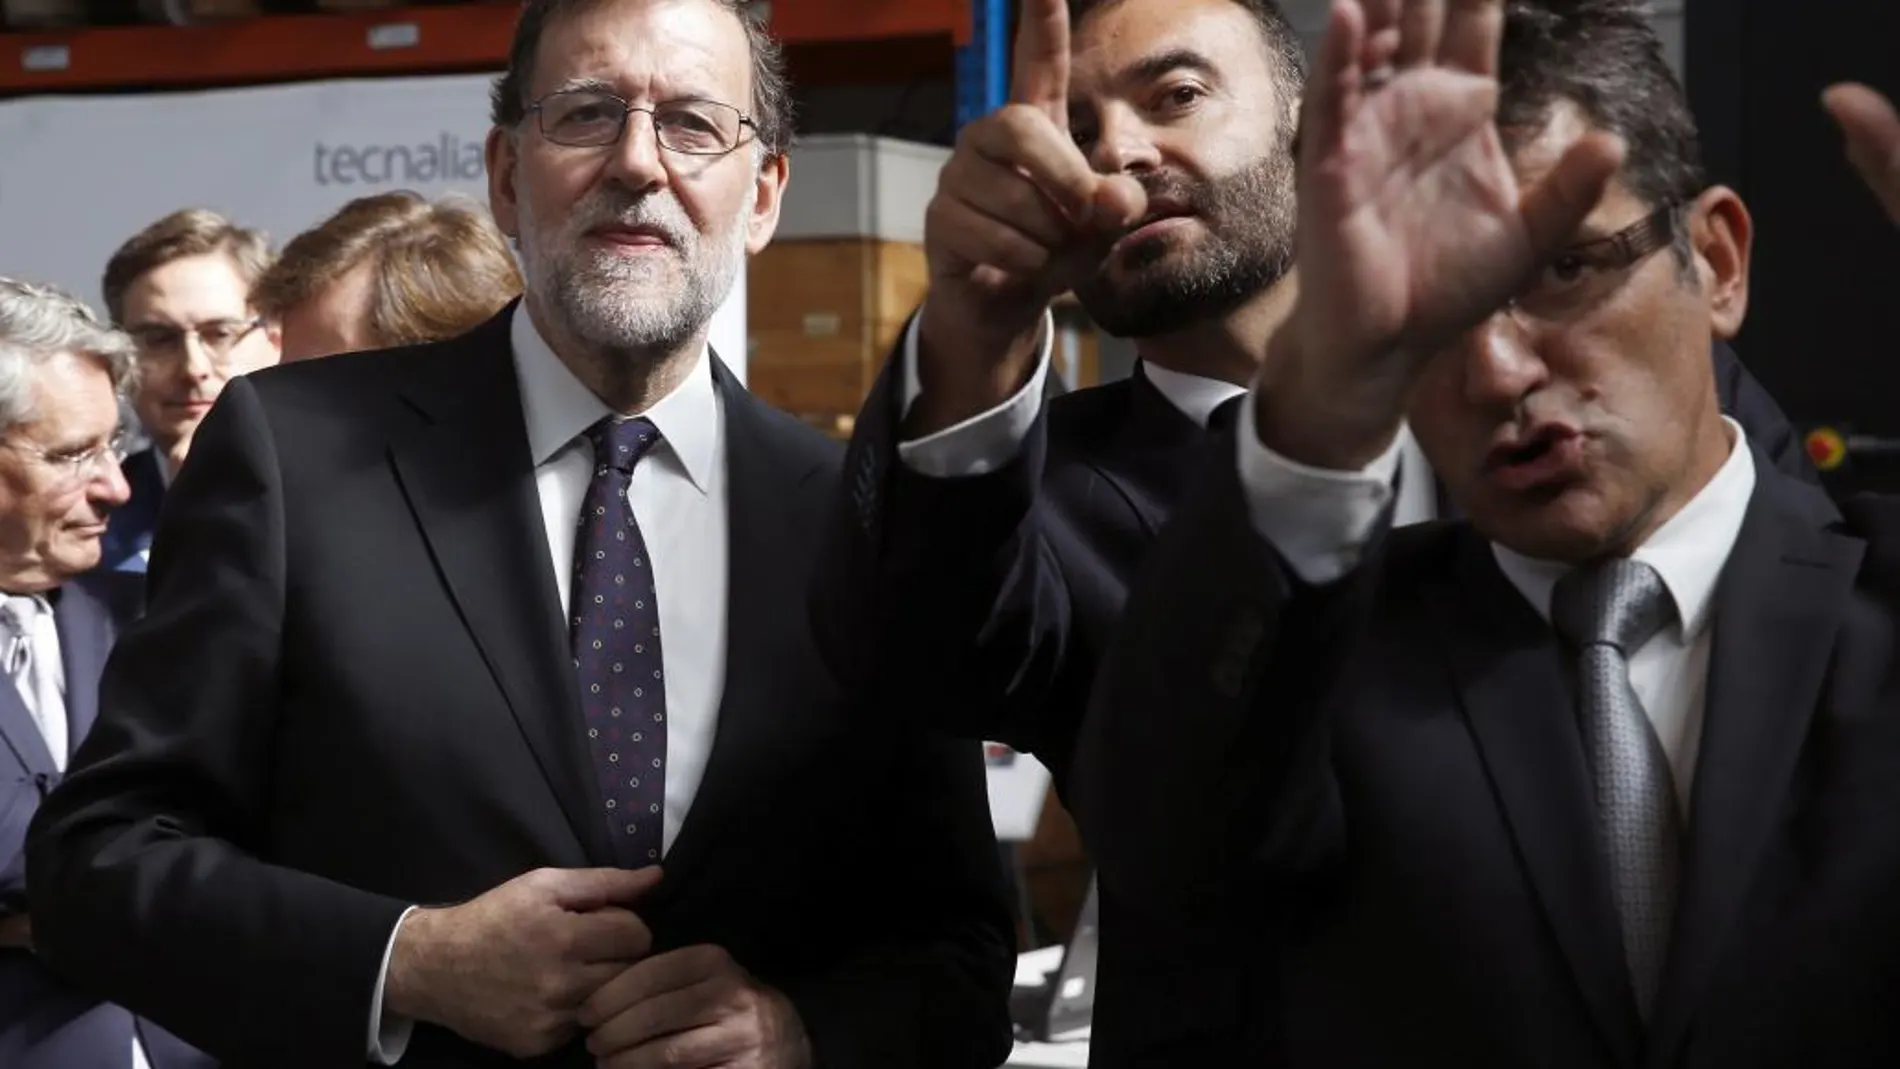 El presidente del Gobierno en funciones, Mariano Rajoy, durante una visita en San Sebastián junto a su candidato a lehendakari, Alfonso Alonso